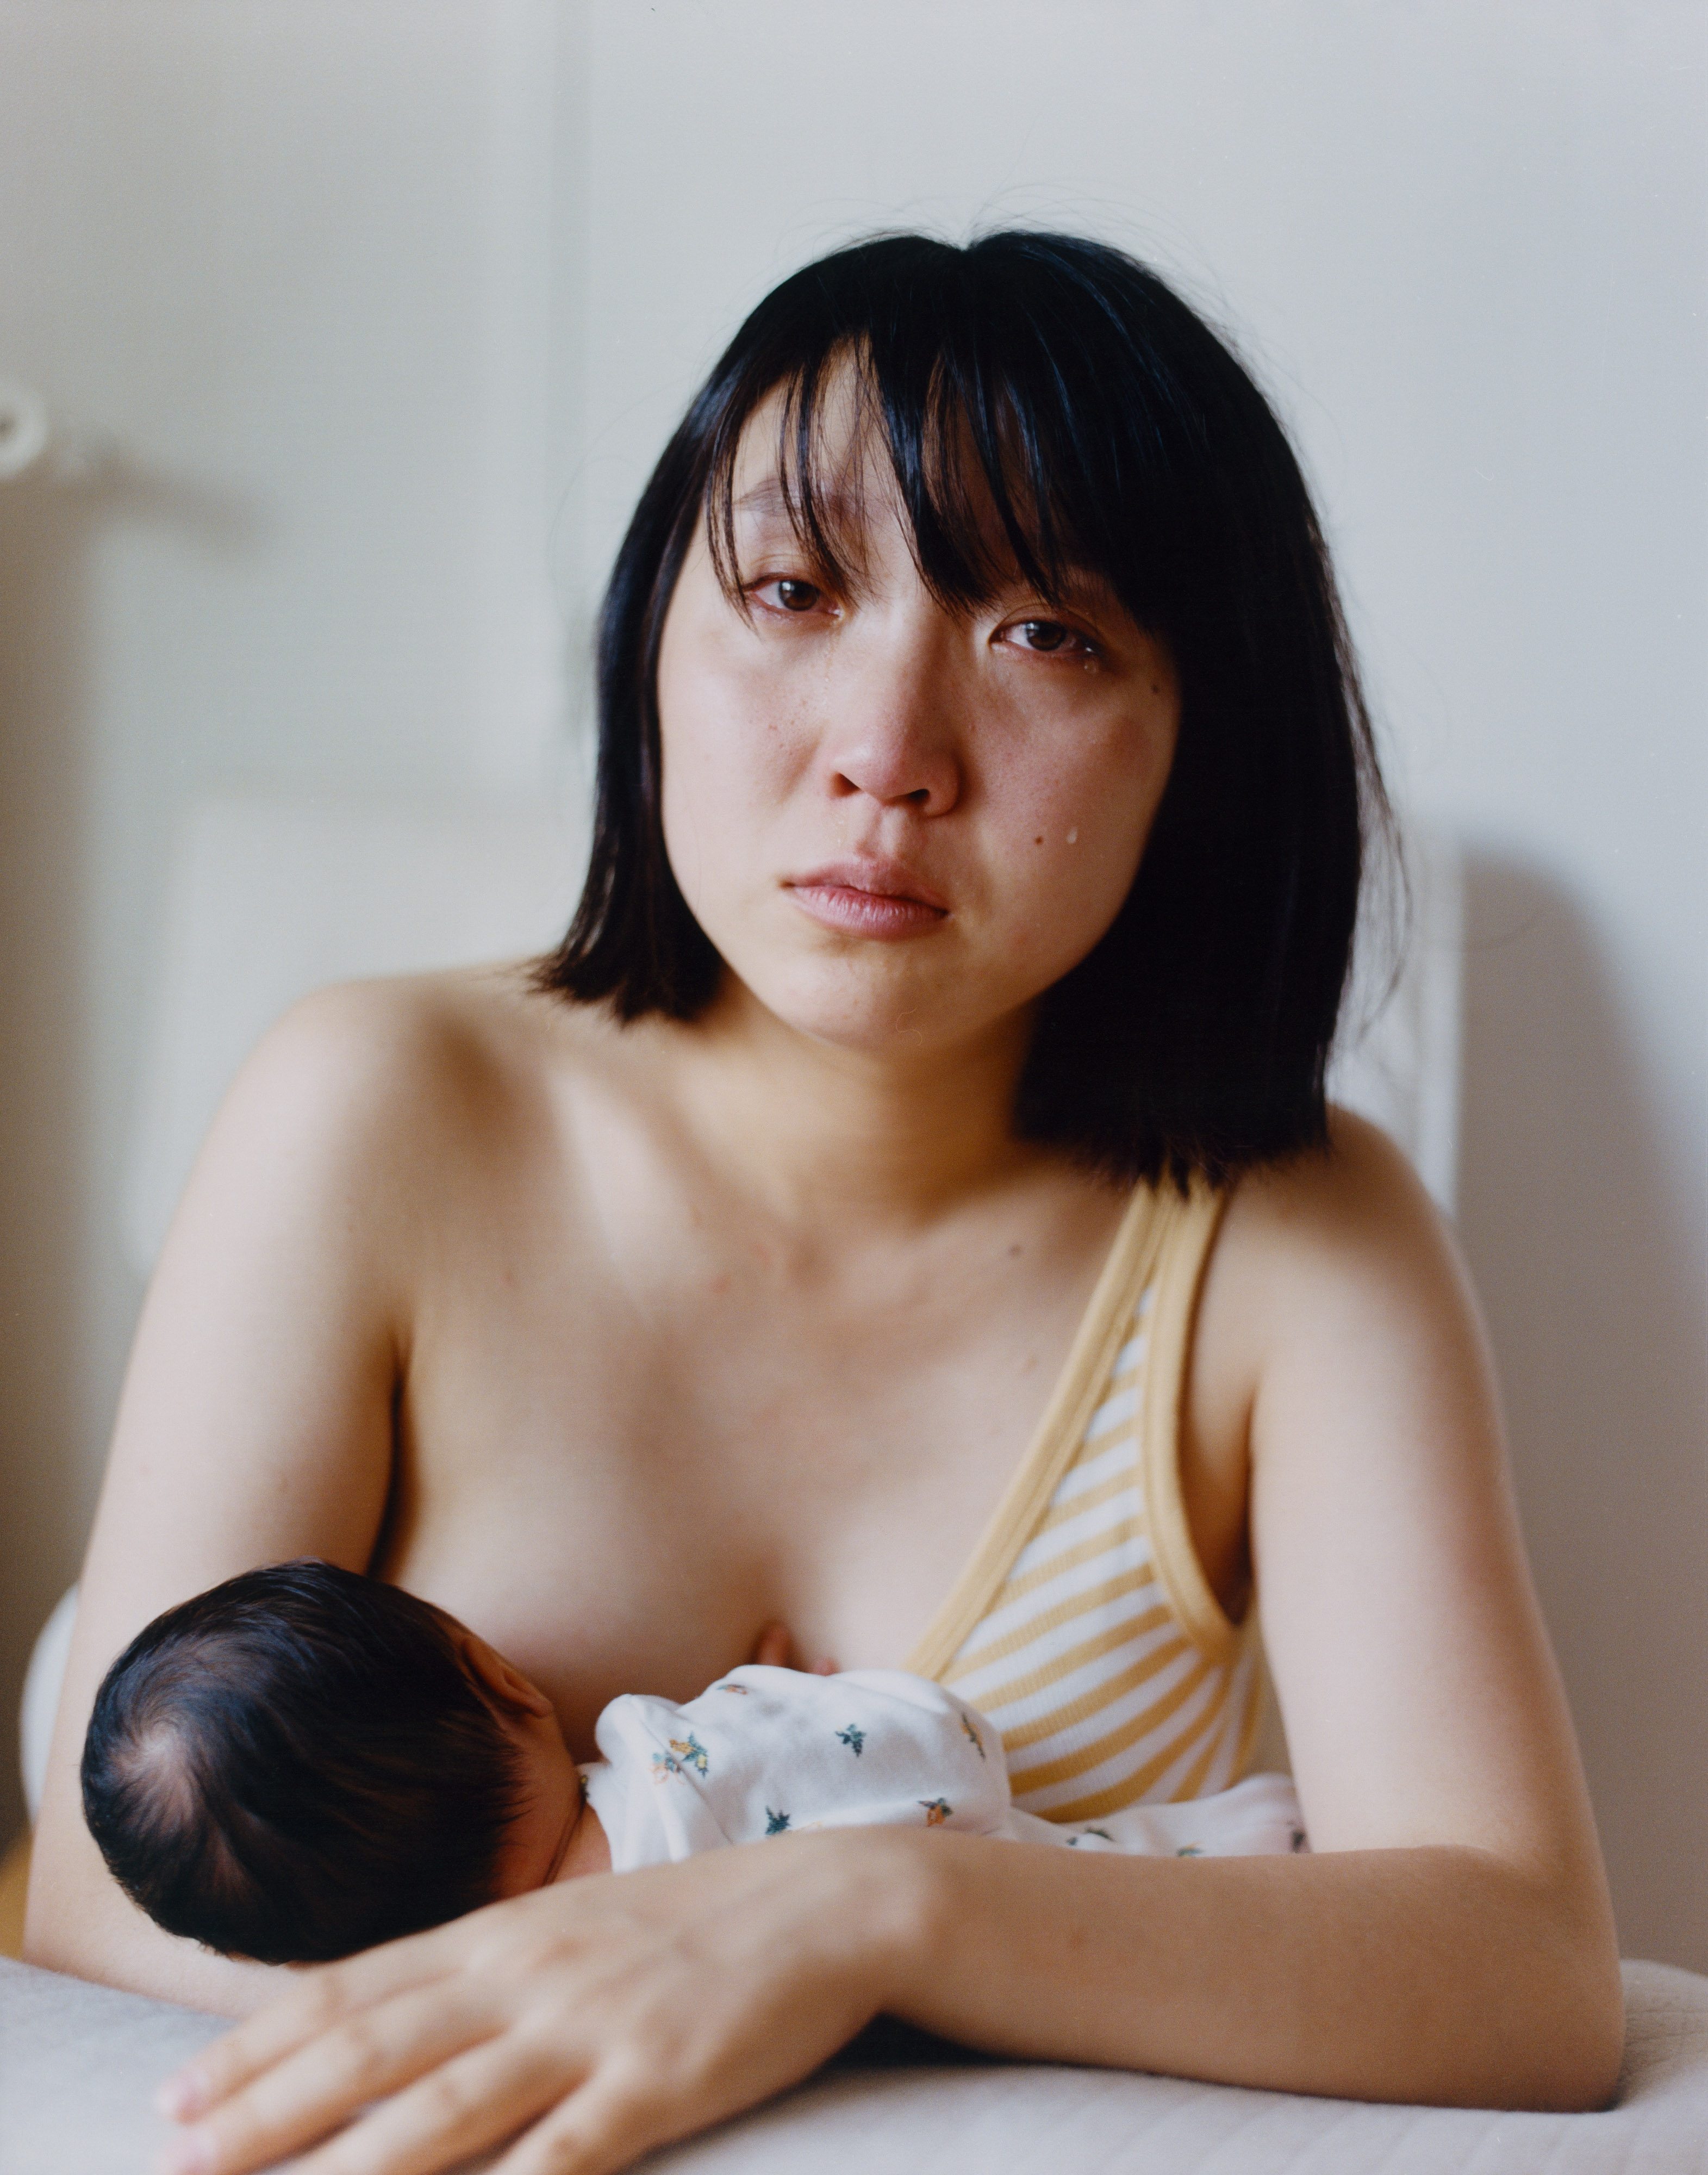 La maternité vue par Alex Huanfa Cheng, lauréat de la Bourse du talent